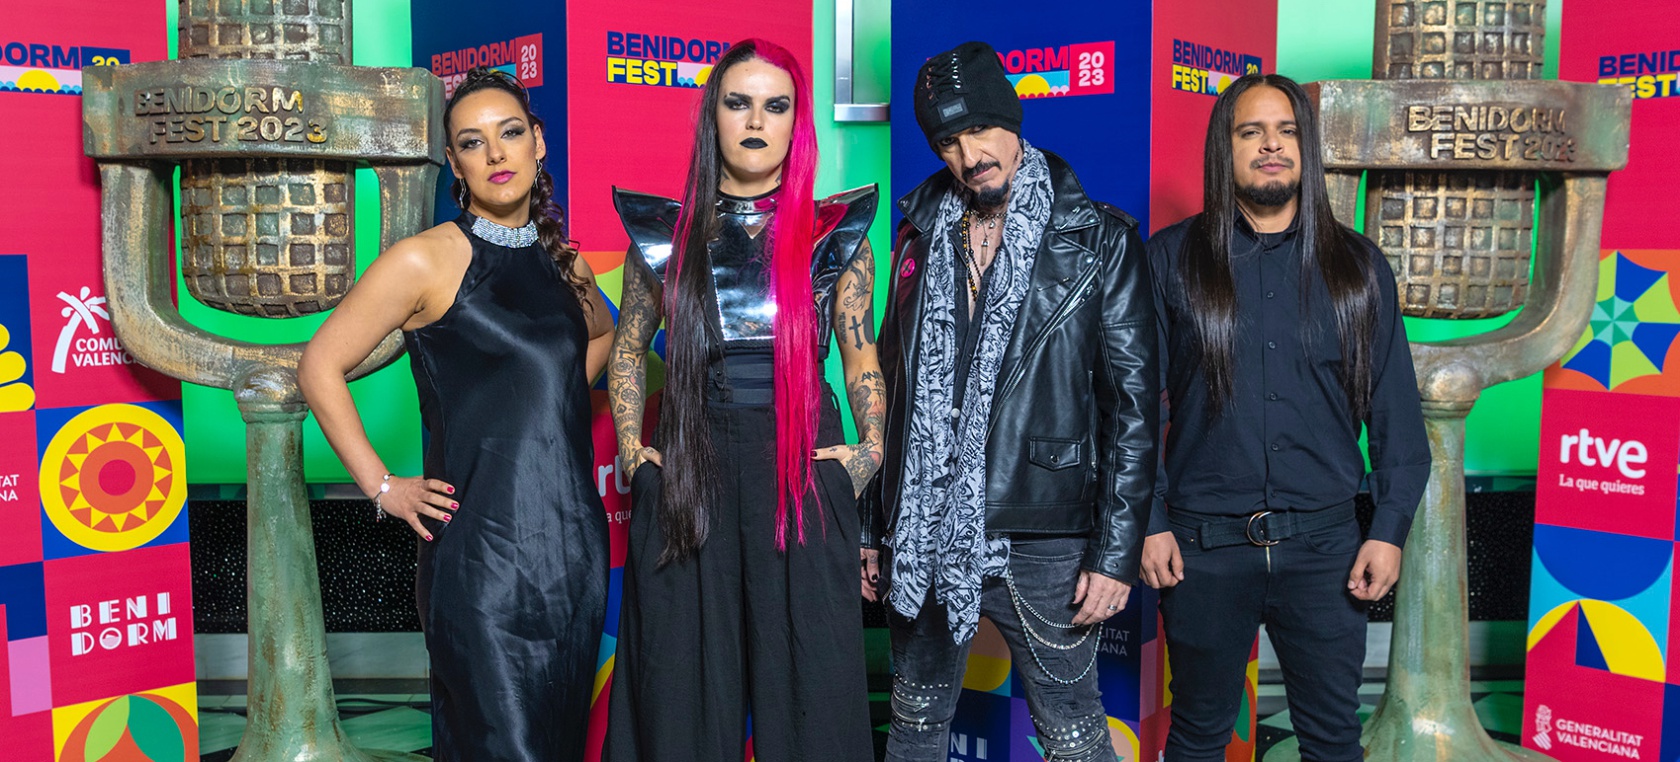 ¿Quién es Megara? El grupo de “fucksia rock” que busca una oportunidad en el Benidorm Fest 2023